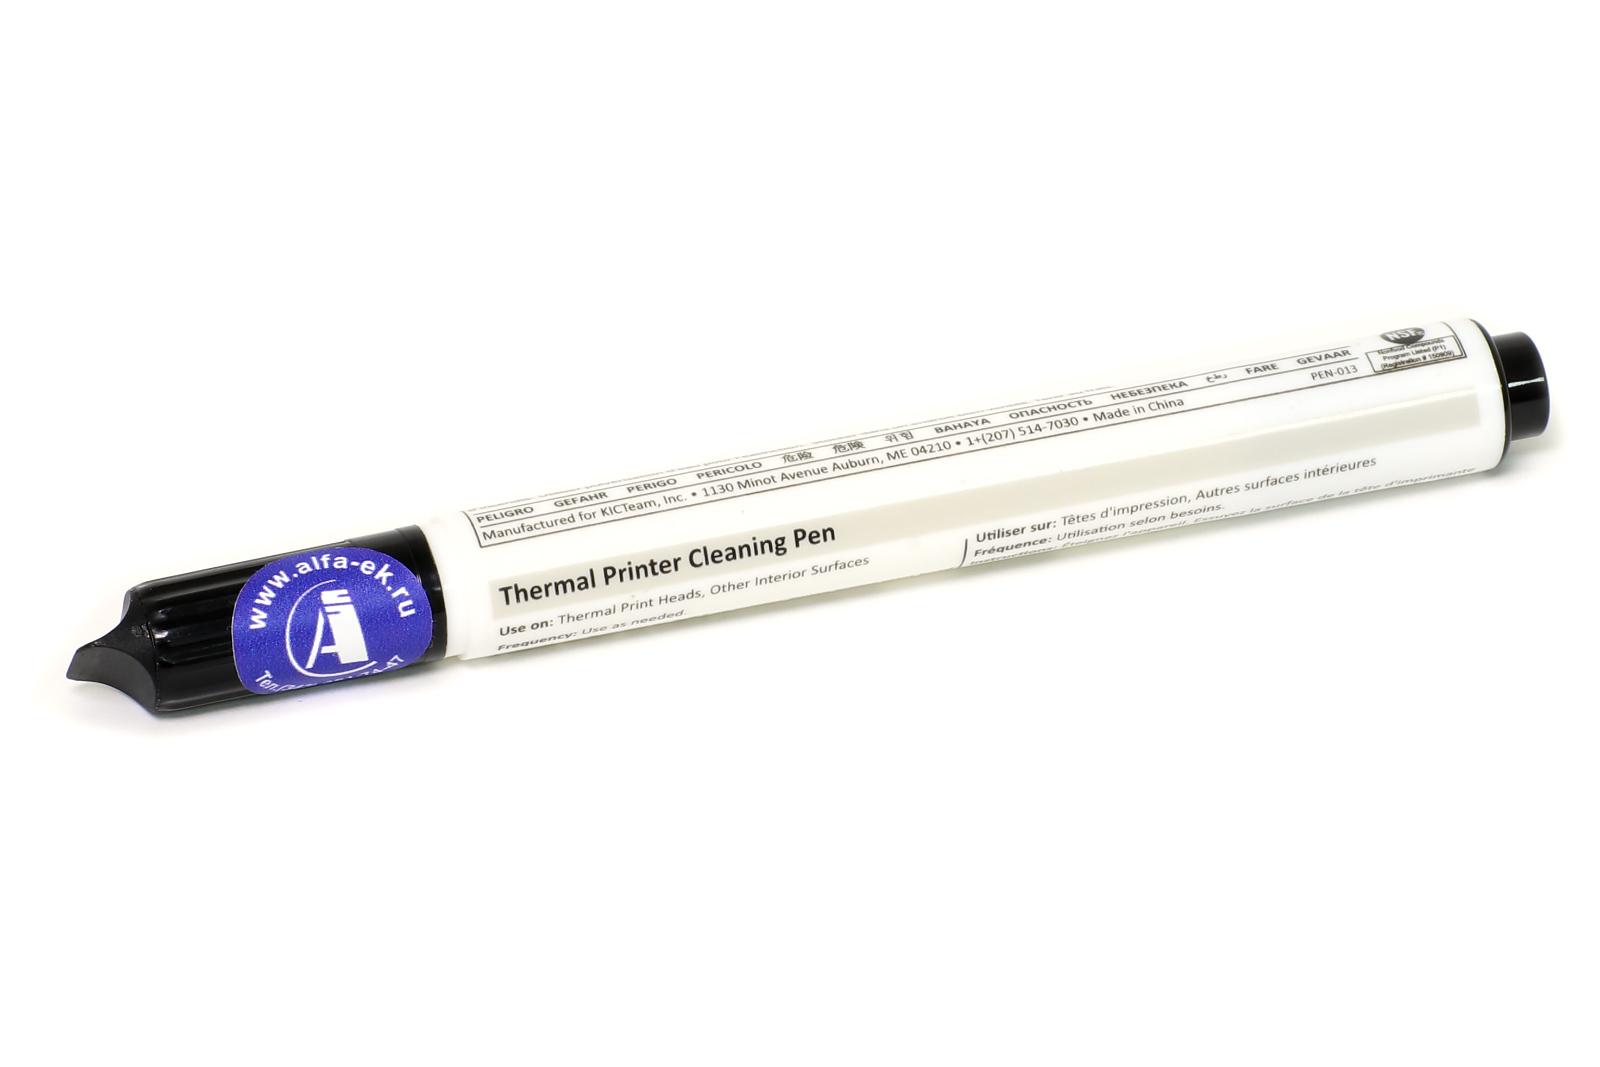 Чистящий карандаш для чистки термоголовок у термо и терморансферных принтеров чеков и принтеров этикеток.